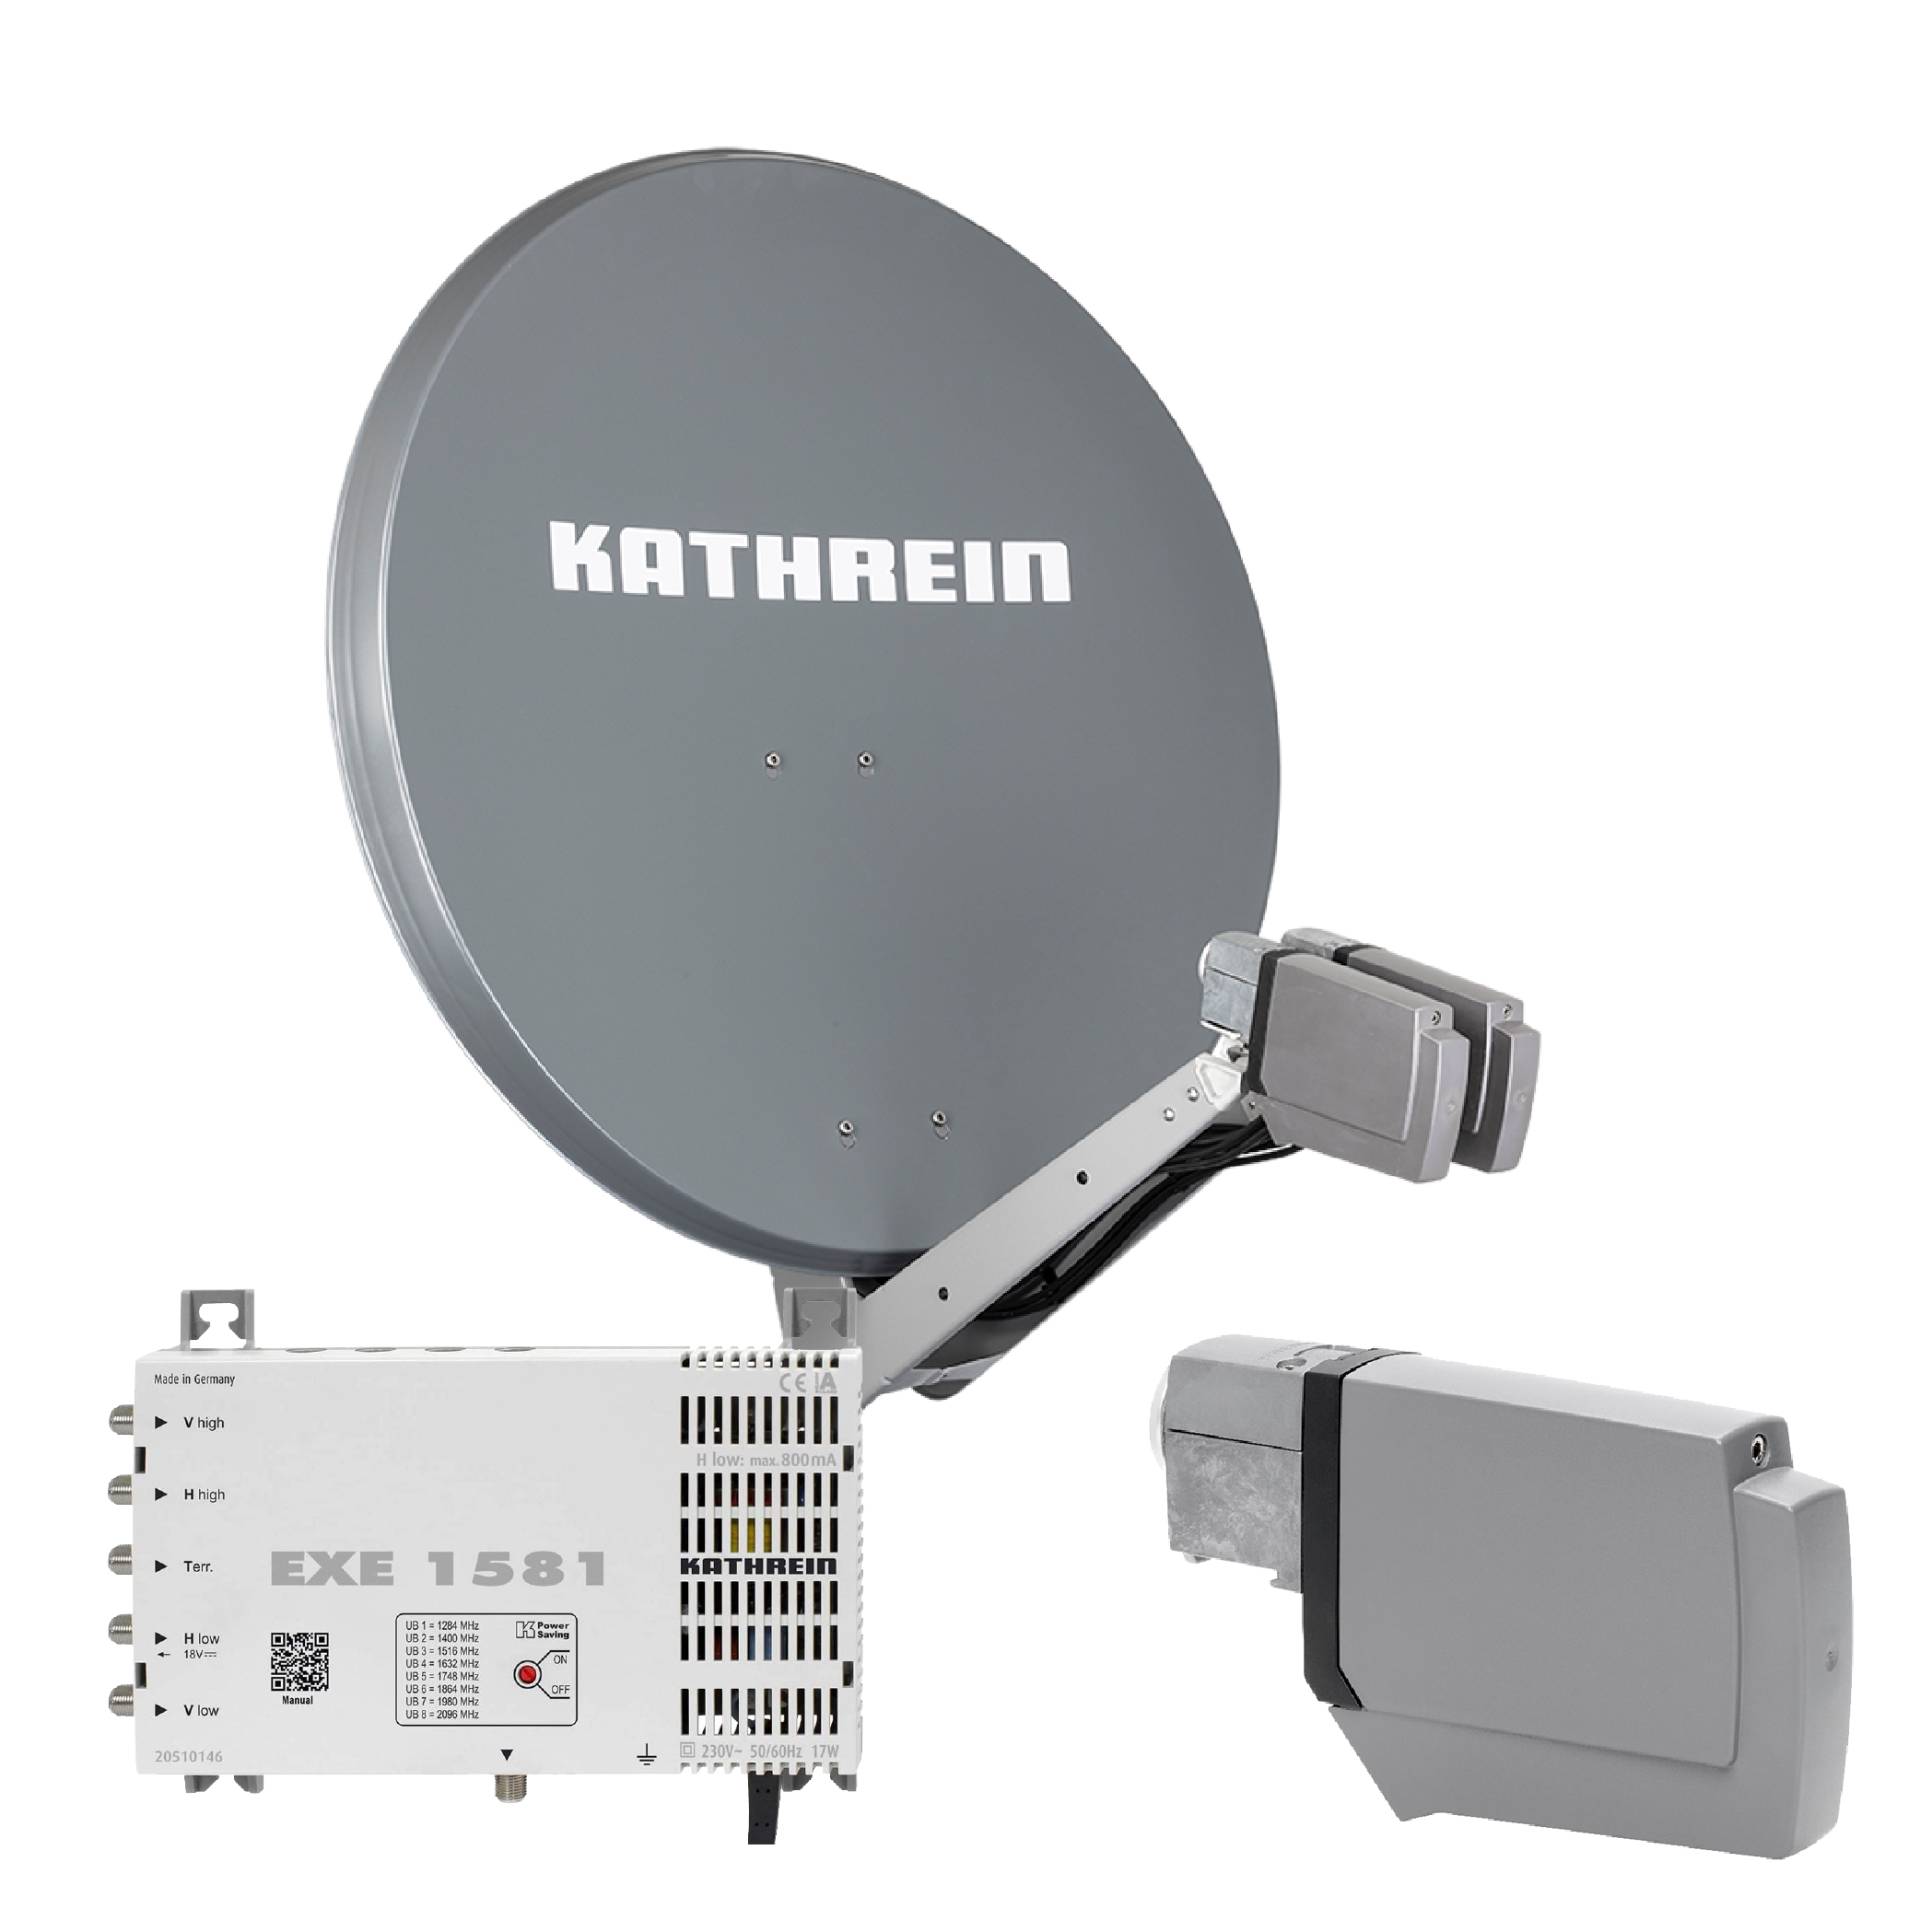 Kathrein CAS 90 gr Sat-Antenne multifeedfähig graphit (grau) - 8 Teilnehmer mit Unicable von Kathrein